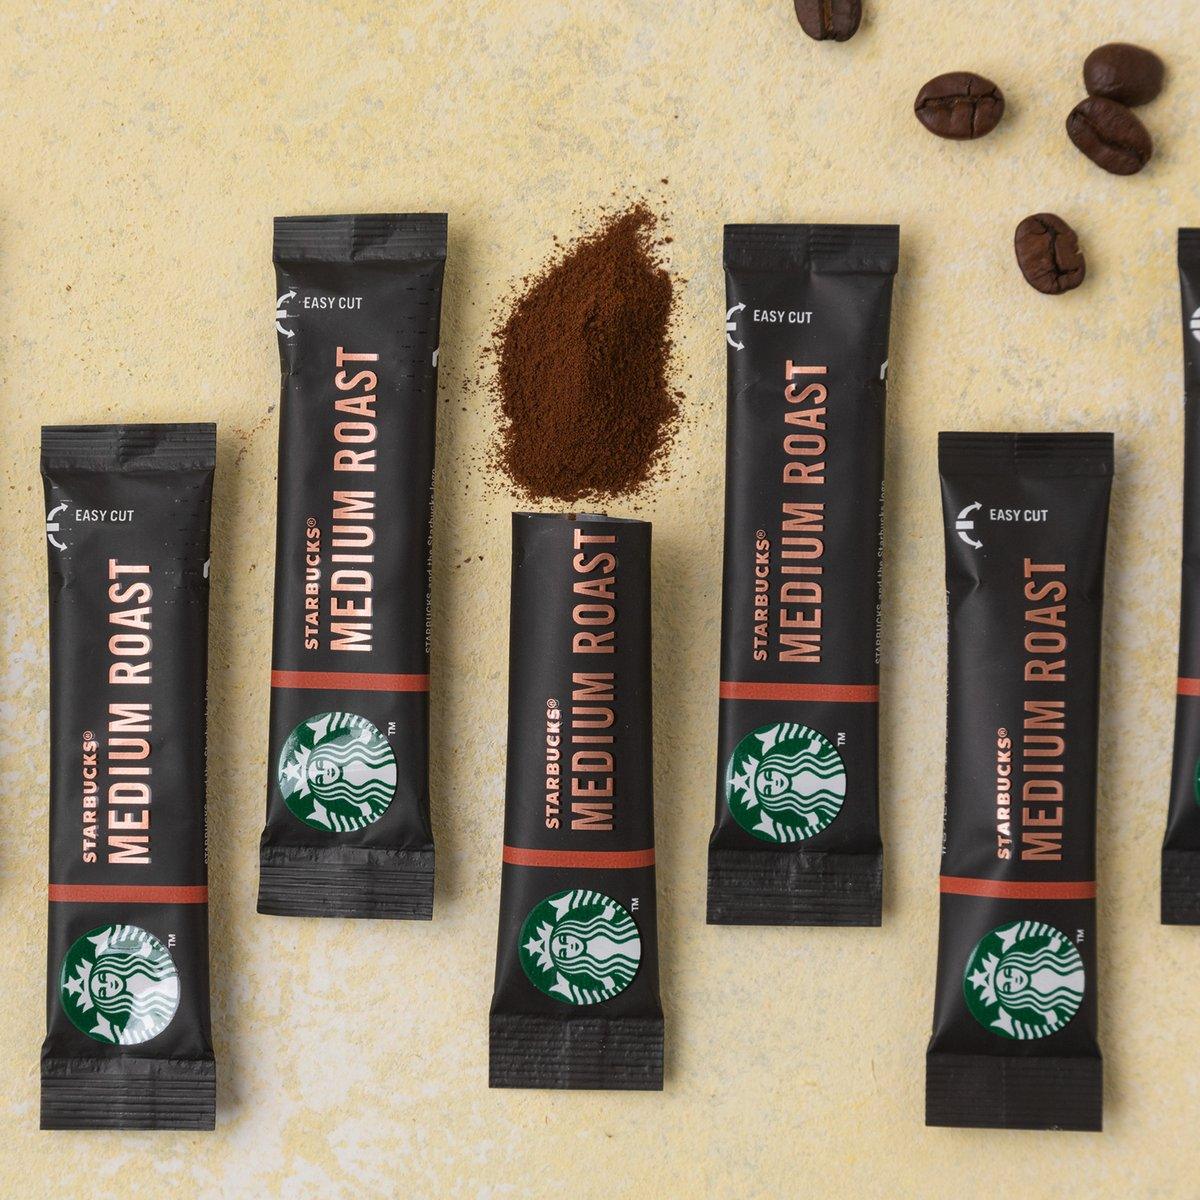 Cà Phê Starbucks Medium Roast Coffee Mix - Kallos Vietnam